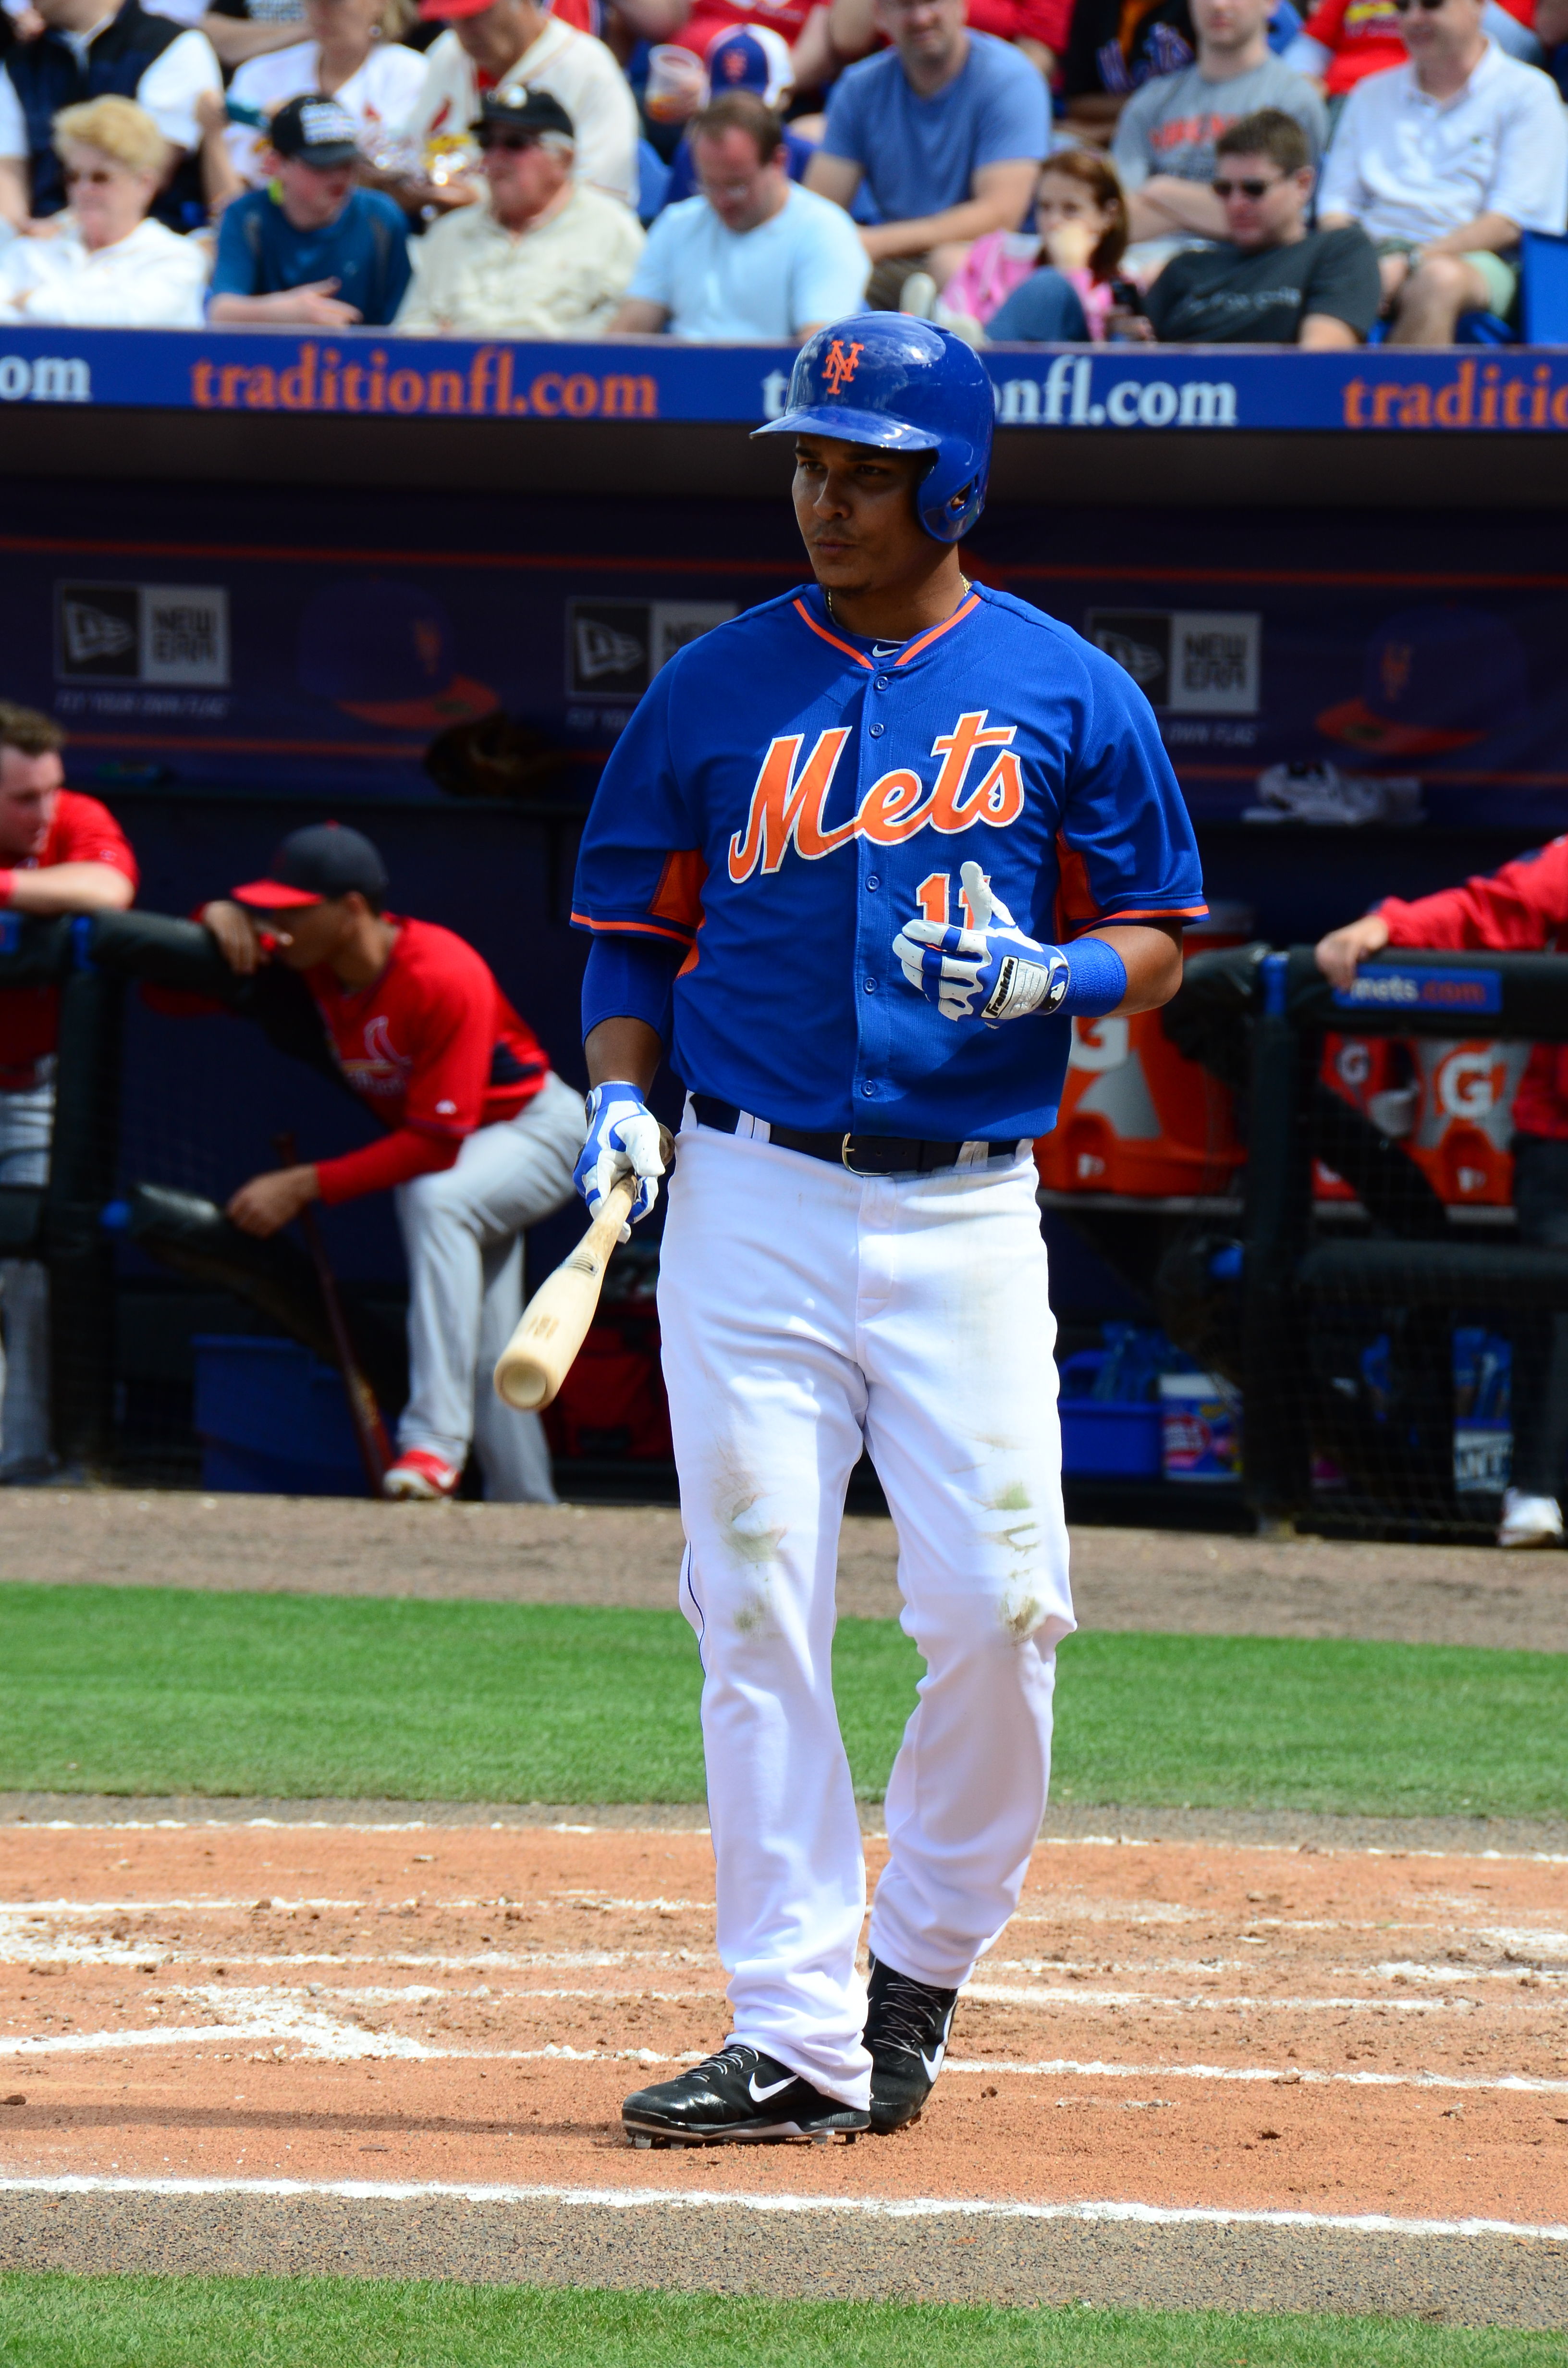 Ruben_Tejada,_NY_Mets,_Spring_Training,_March_7,_2014